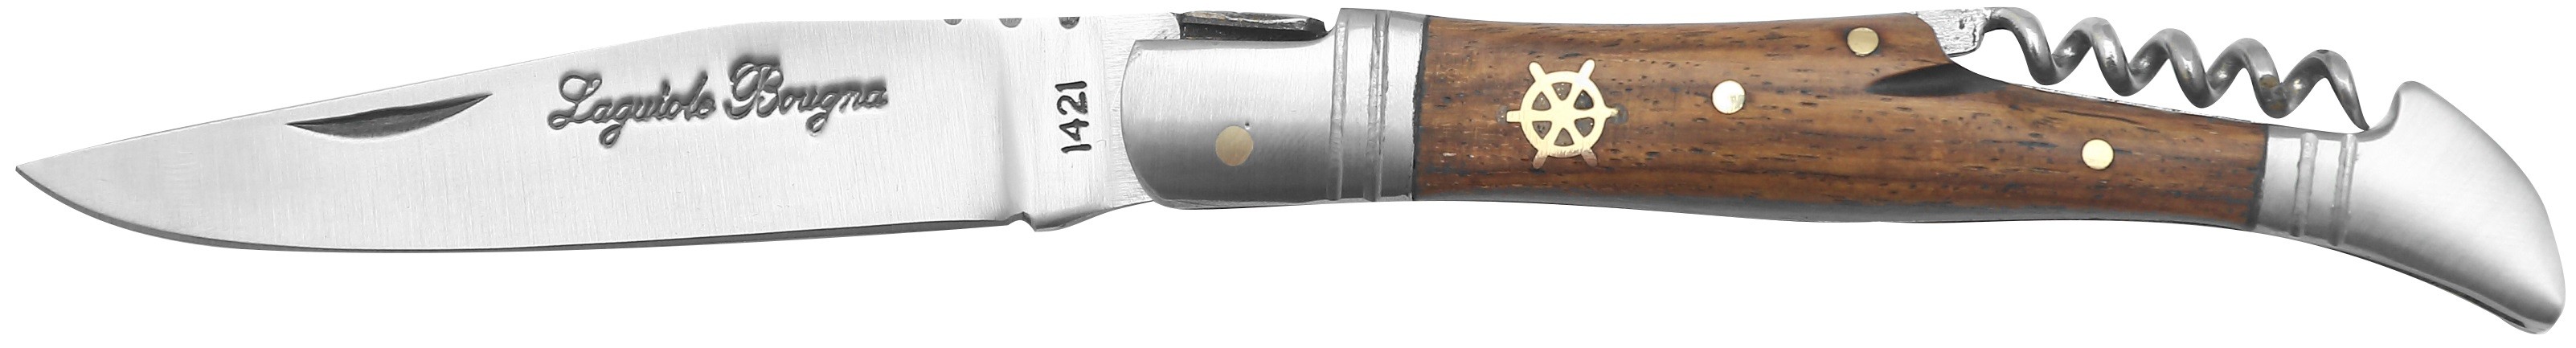 LB - Couteau 12 cm TB - palissandre gouvernail